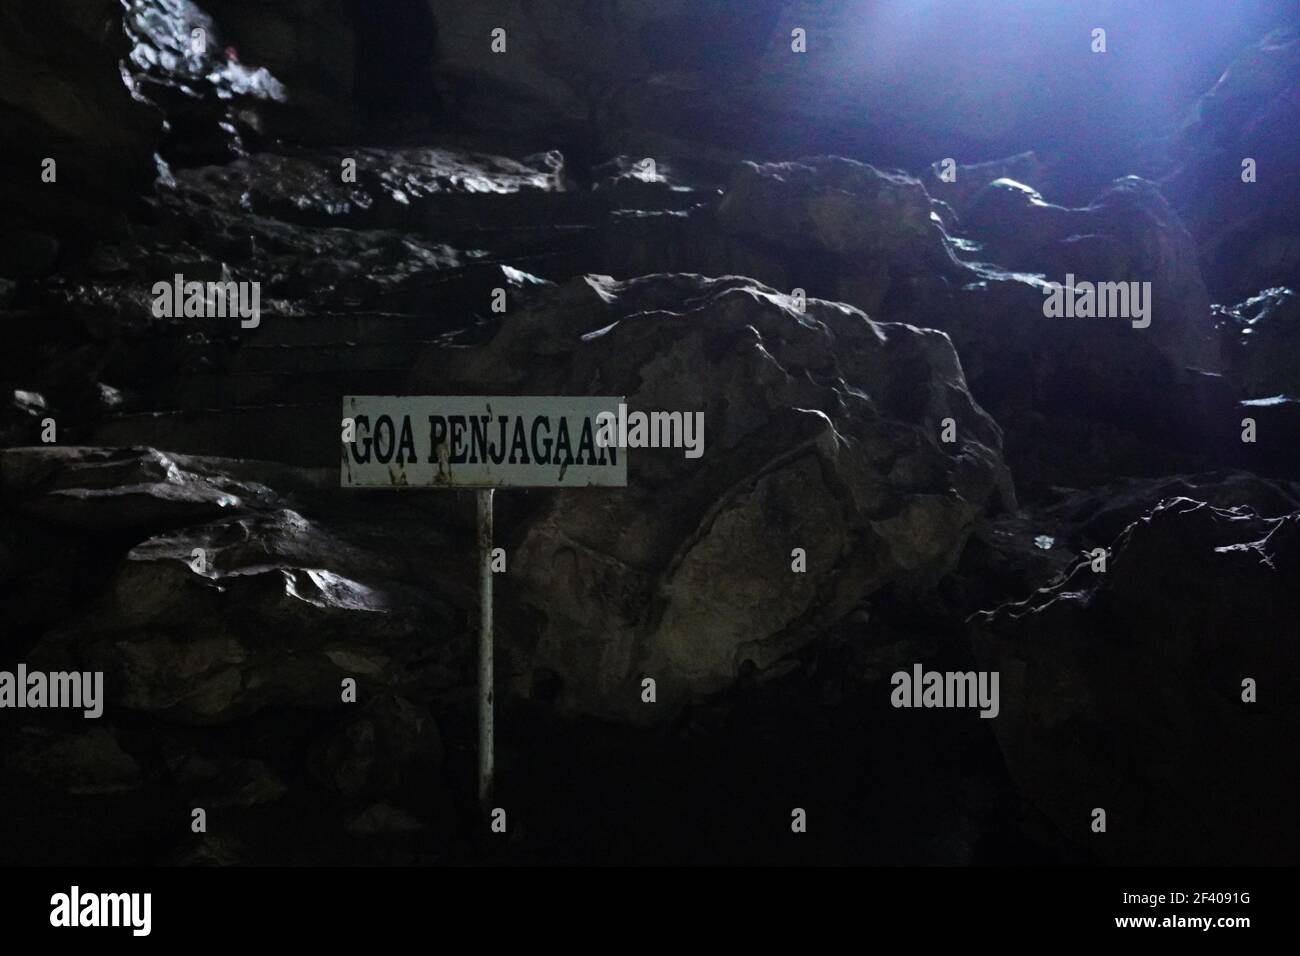 Goa Putri ist eine Höhle in Padang Bindu Village, Semindang Aji District, Ogan Komering Ulu Regency, Baturaja, Süd-Sumatra. Diese Höhle ist etwa einen Kilometer entfernt, die Baturaja und Muara Enim verbindet. Goa Putri ist in der Lage, Schönheit und historischen Wert zu schaffen, die nicht verpasst werden sollte. Der Legende nach lebte vor langer Zeit eine Tochter namens Dayang Merindu, die Konkubine von Prabu Amir Rasyid, dem Herrscher des Oganreiches. (Foto von Muhammad Shahab/Pacific Press) Stockfoto